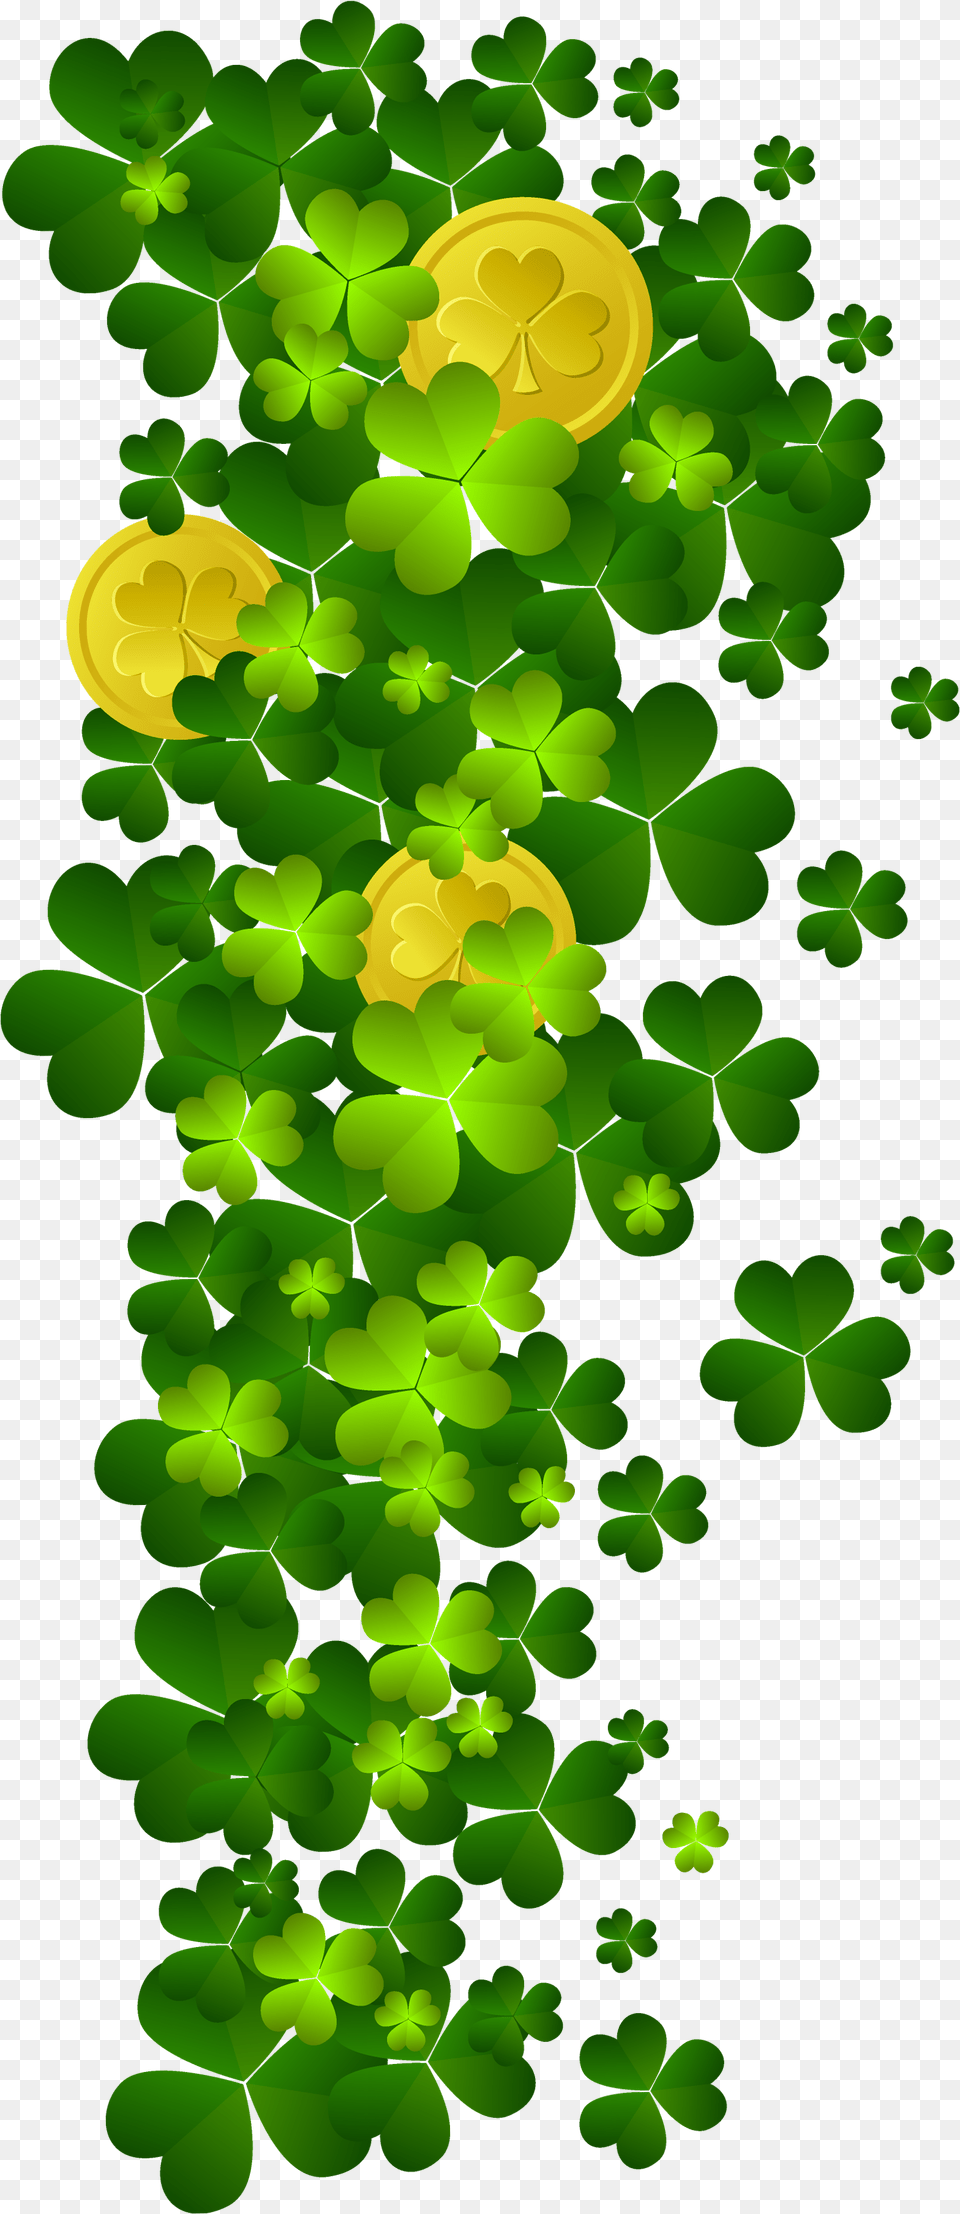 Shamrocks St Patricks Gold Coins, Green, Leaf, Plant, Pattern Free Png Download